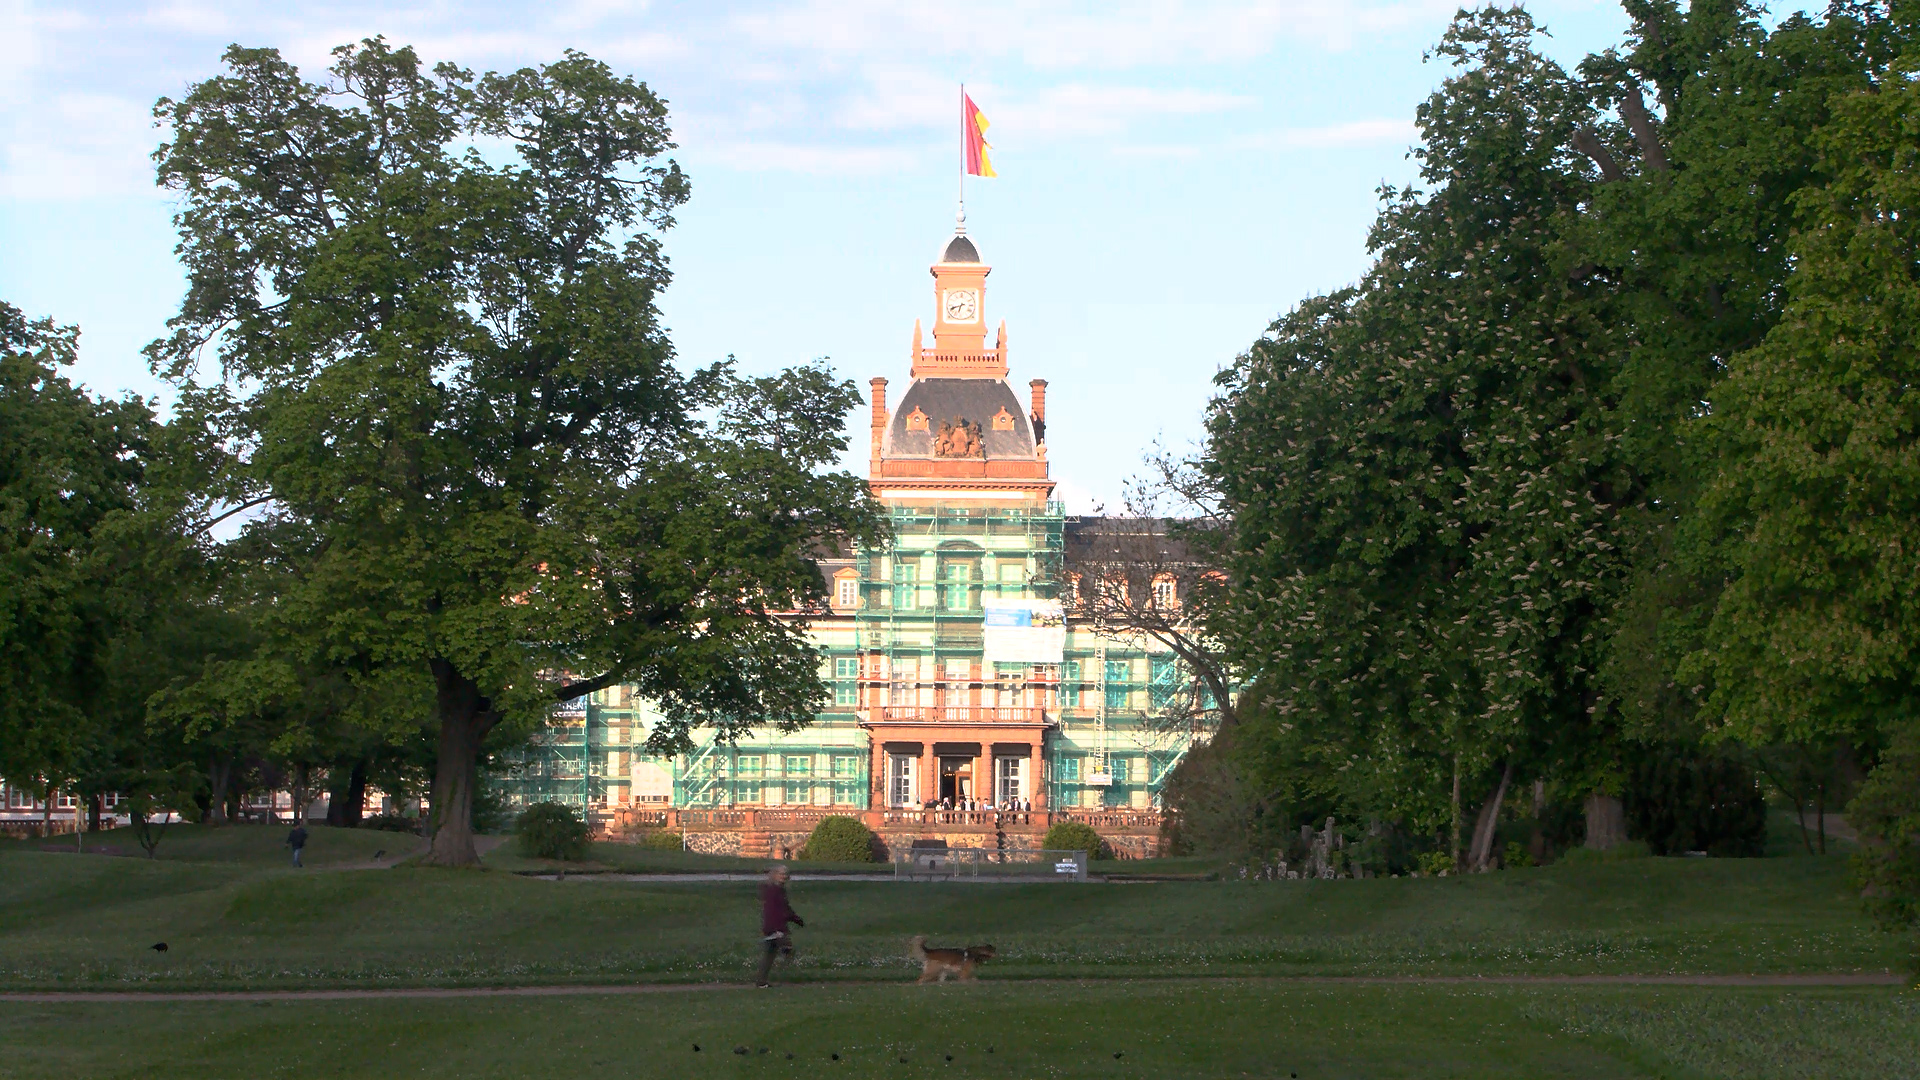 Nachtwächterführung im Hanauer Schlosspark